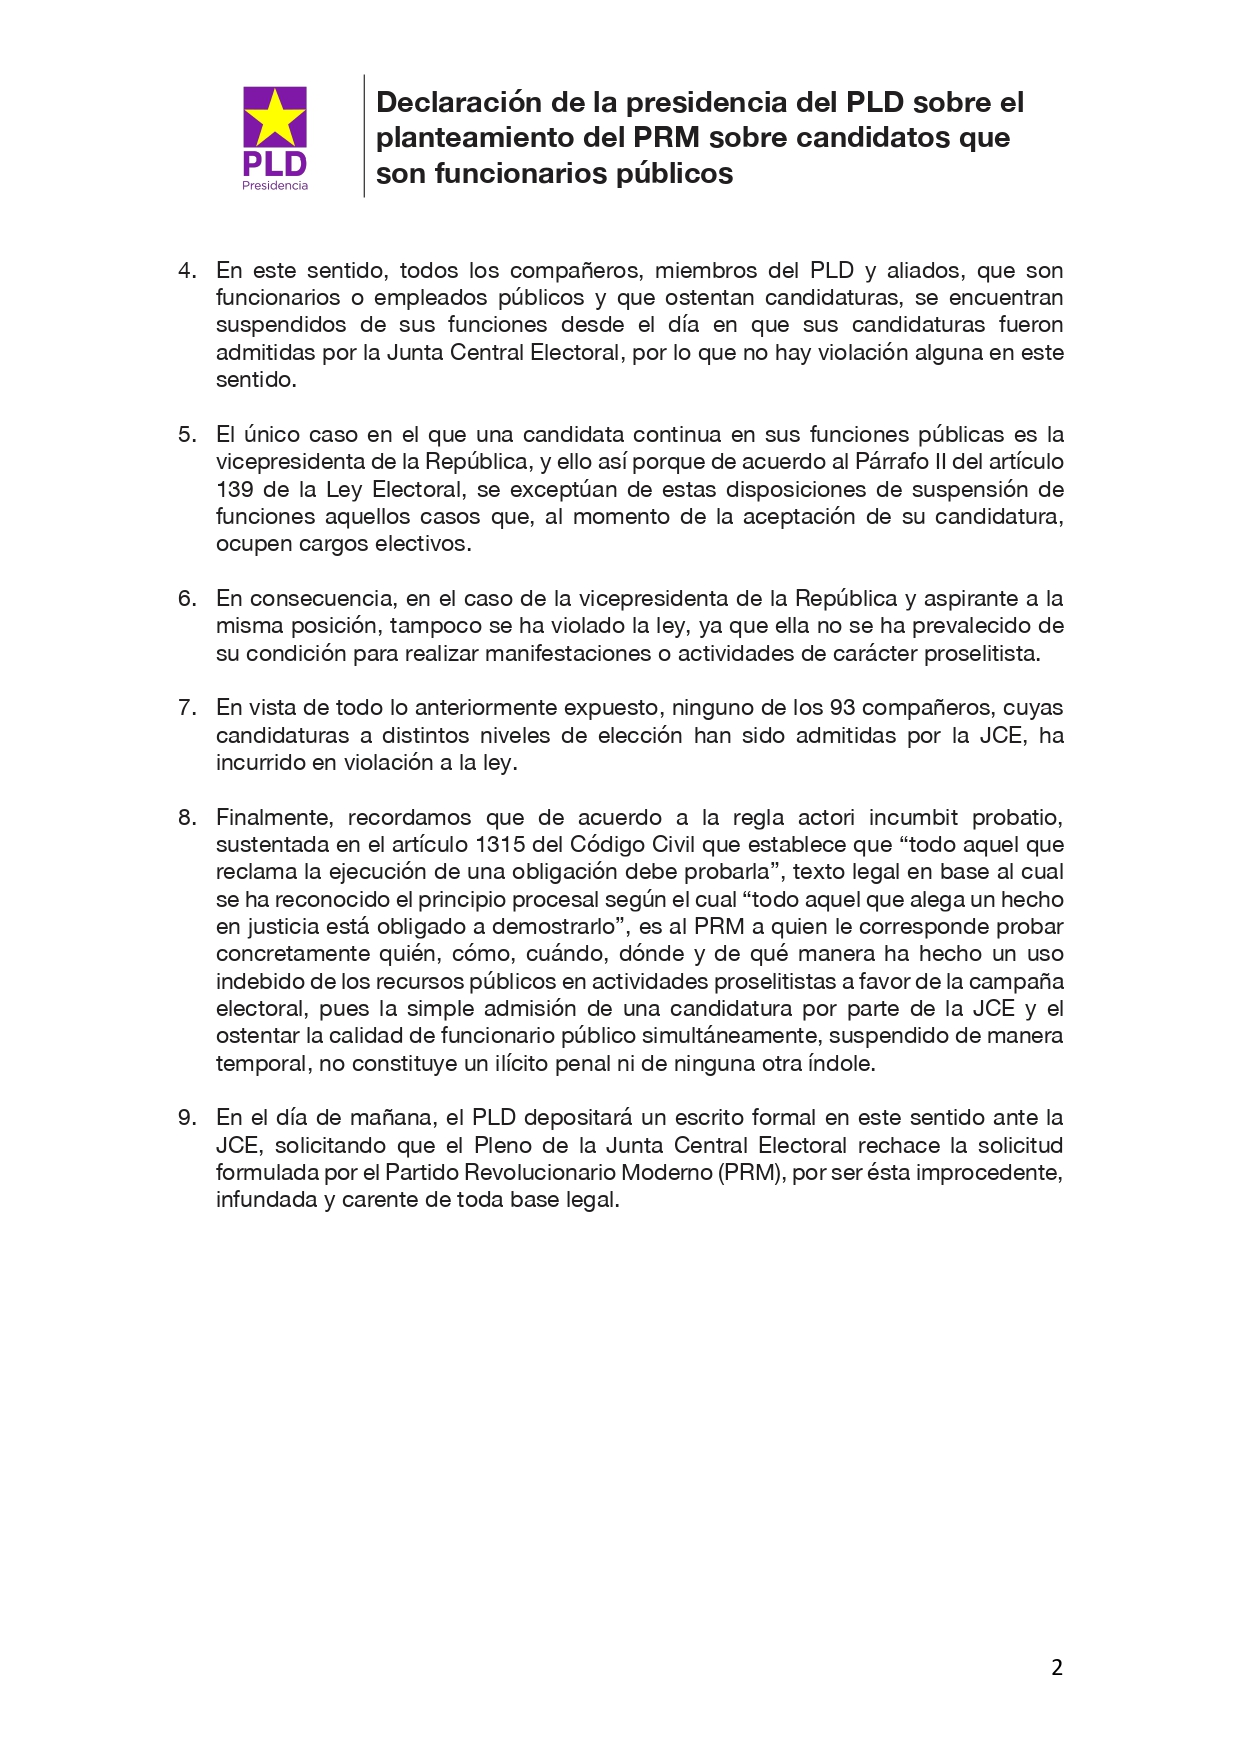 2020-05-31 Declaración de la presidencia del PLD sobre el planteamiento del PRM sobre candidatos que son funcionarios publicos_page-0002